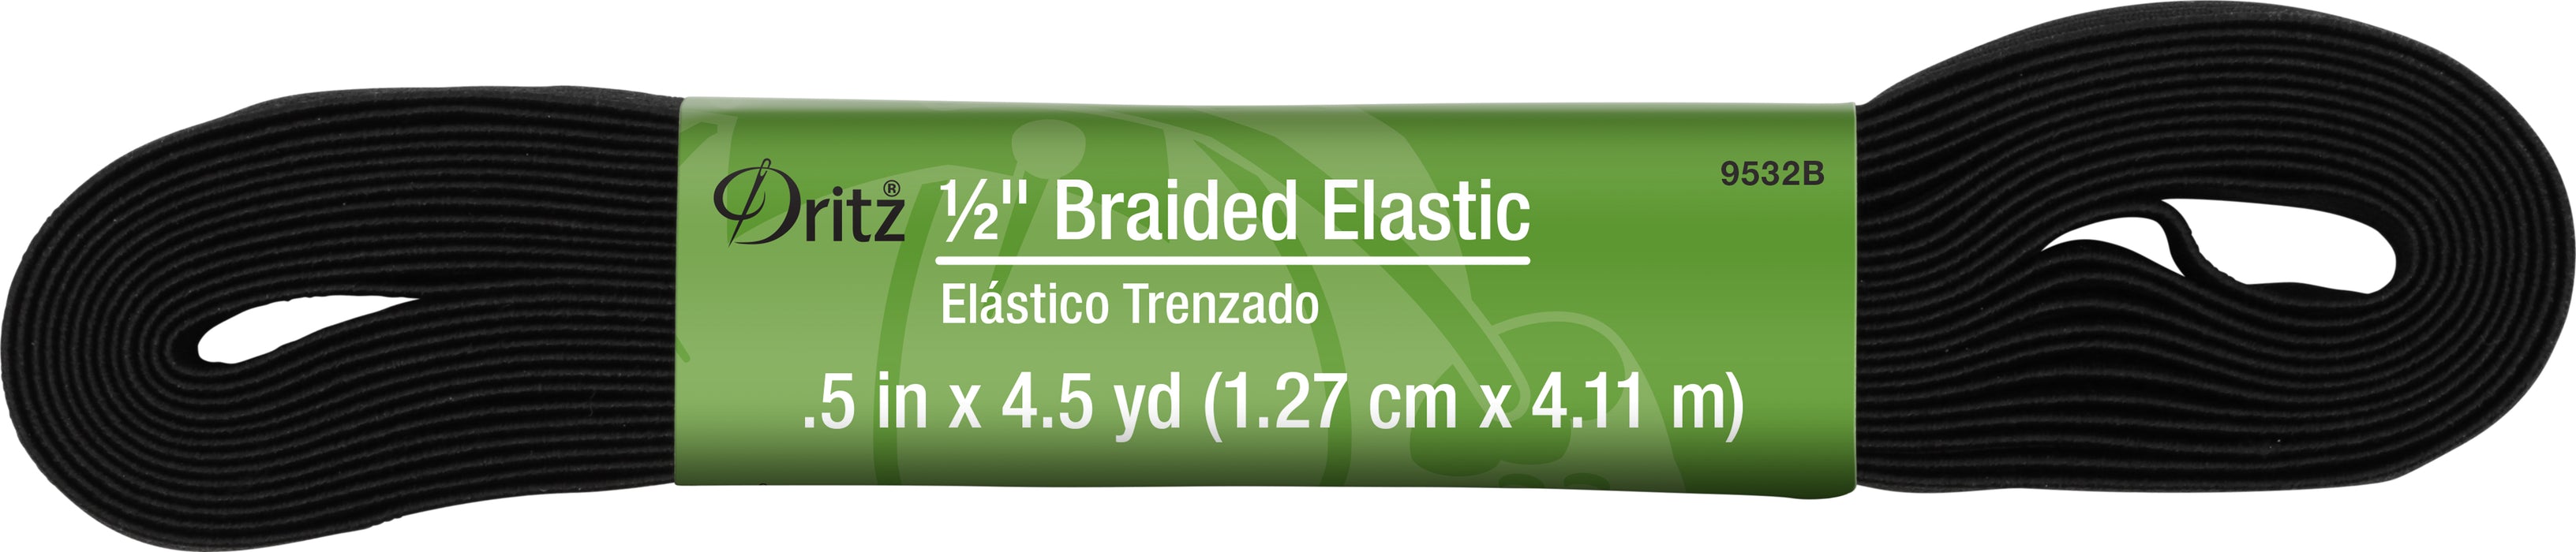 1/2" Black Braided Elastic, 4-1/2 yd